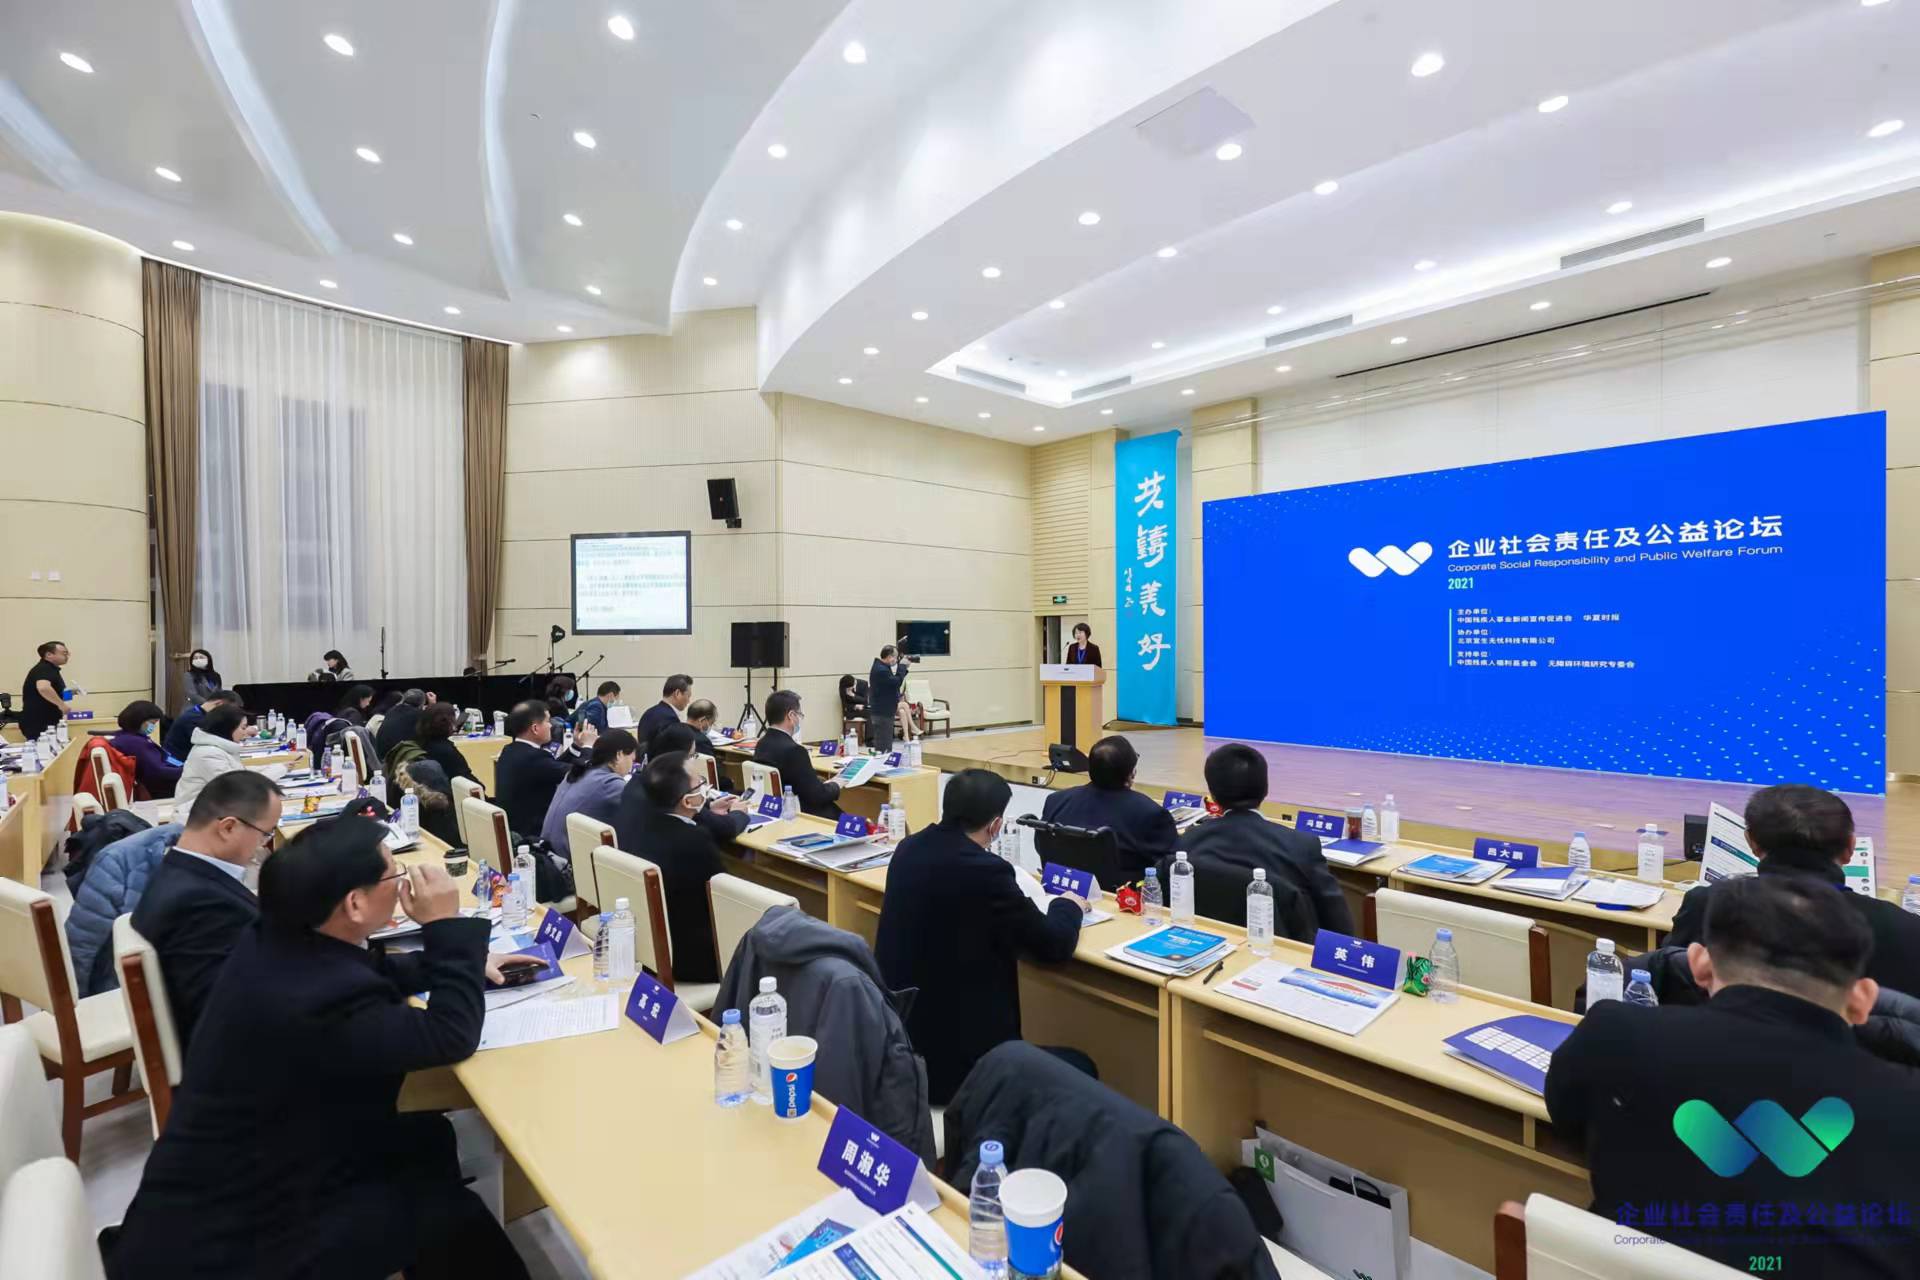 2021(首届)企业社会责任及公益论坛在京举行 大公网总编辑王文韬获颁“助残公益使者”